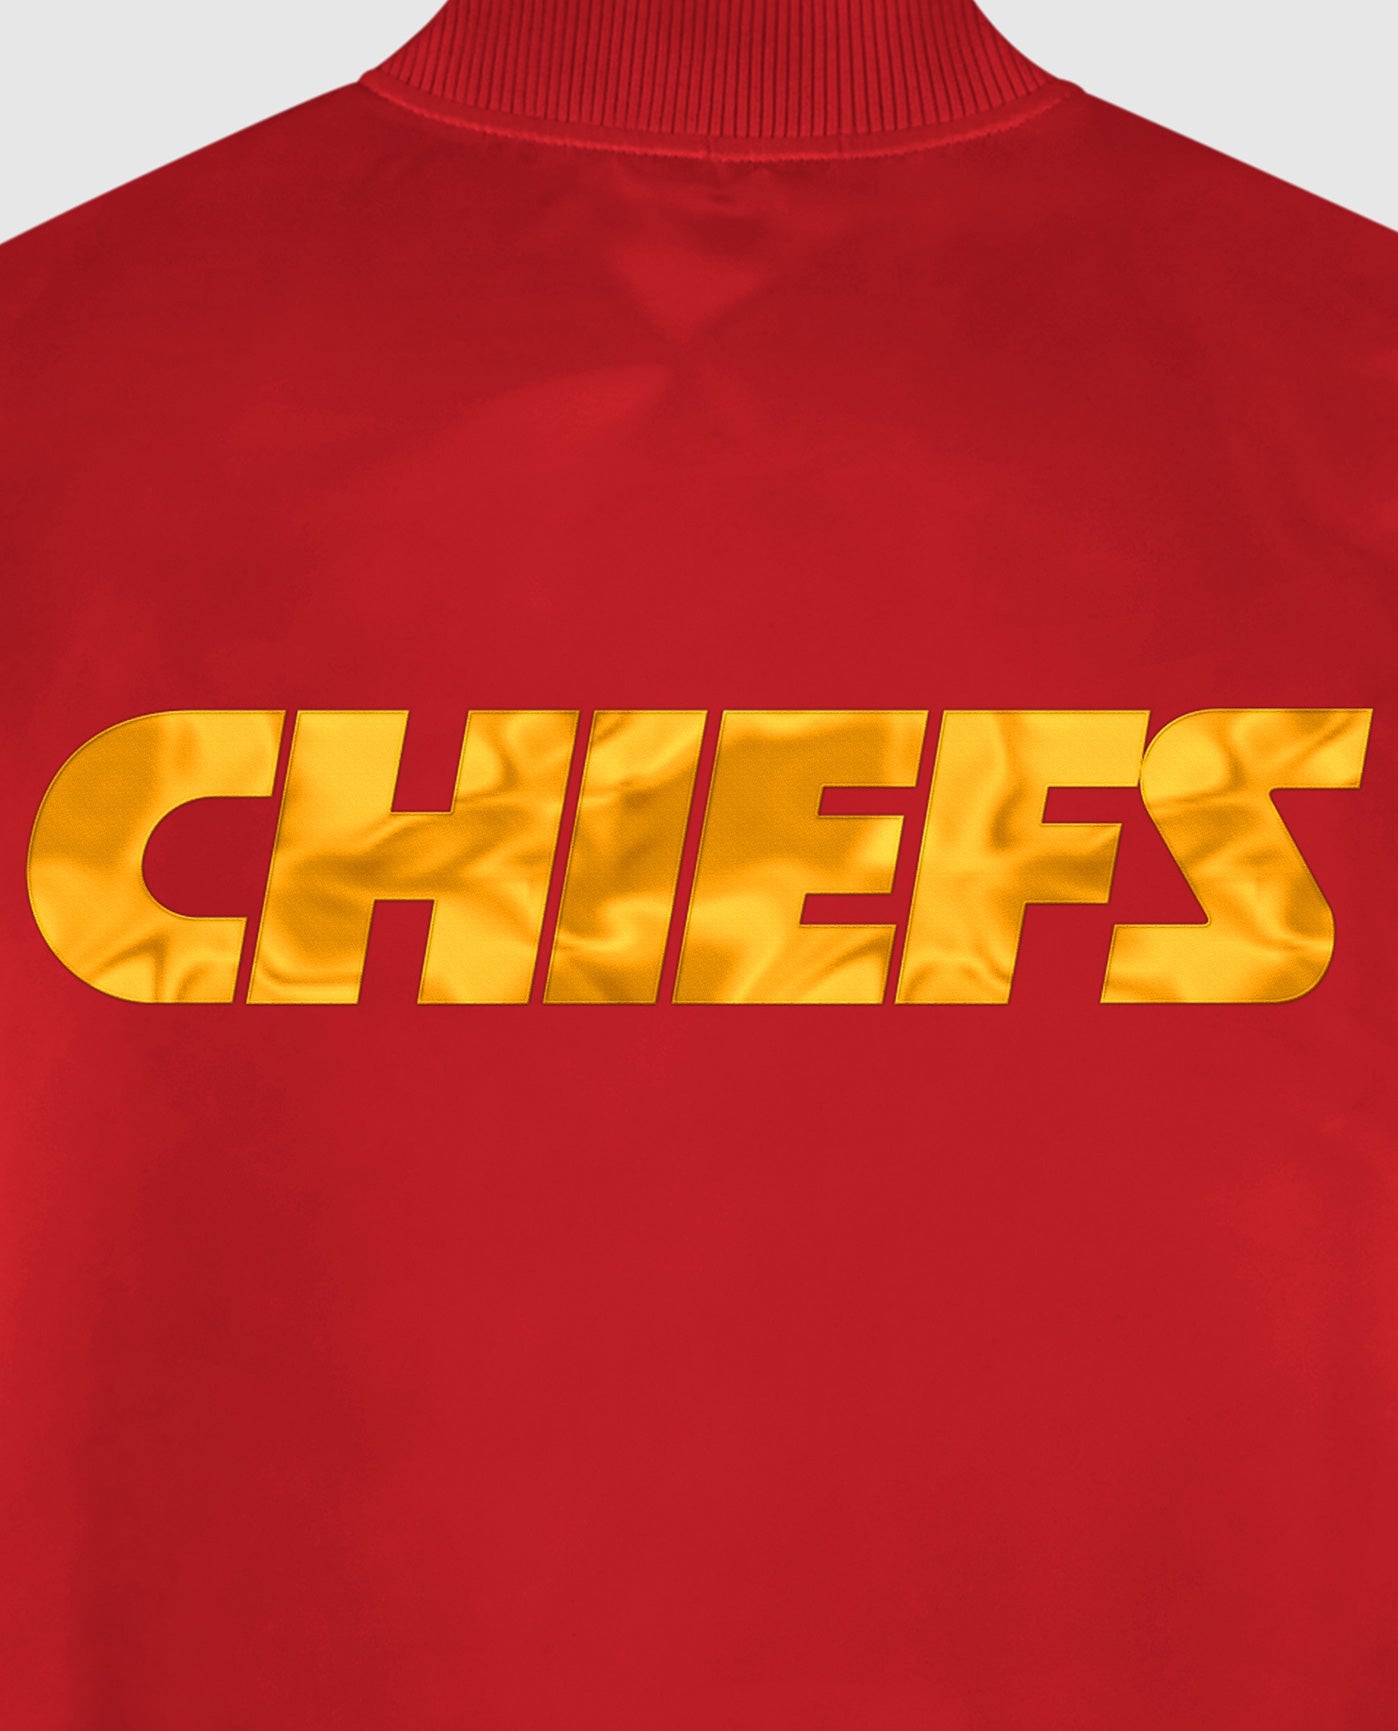 Kansas City Chiefs Team Name Twill Applique | Chiefs Red